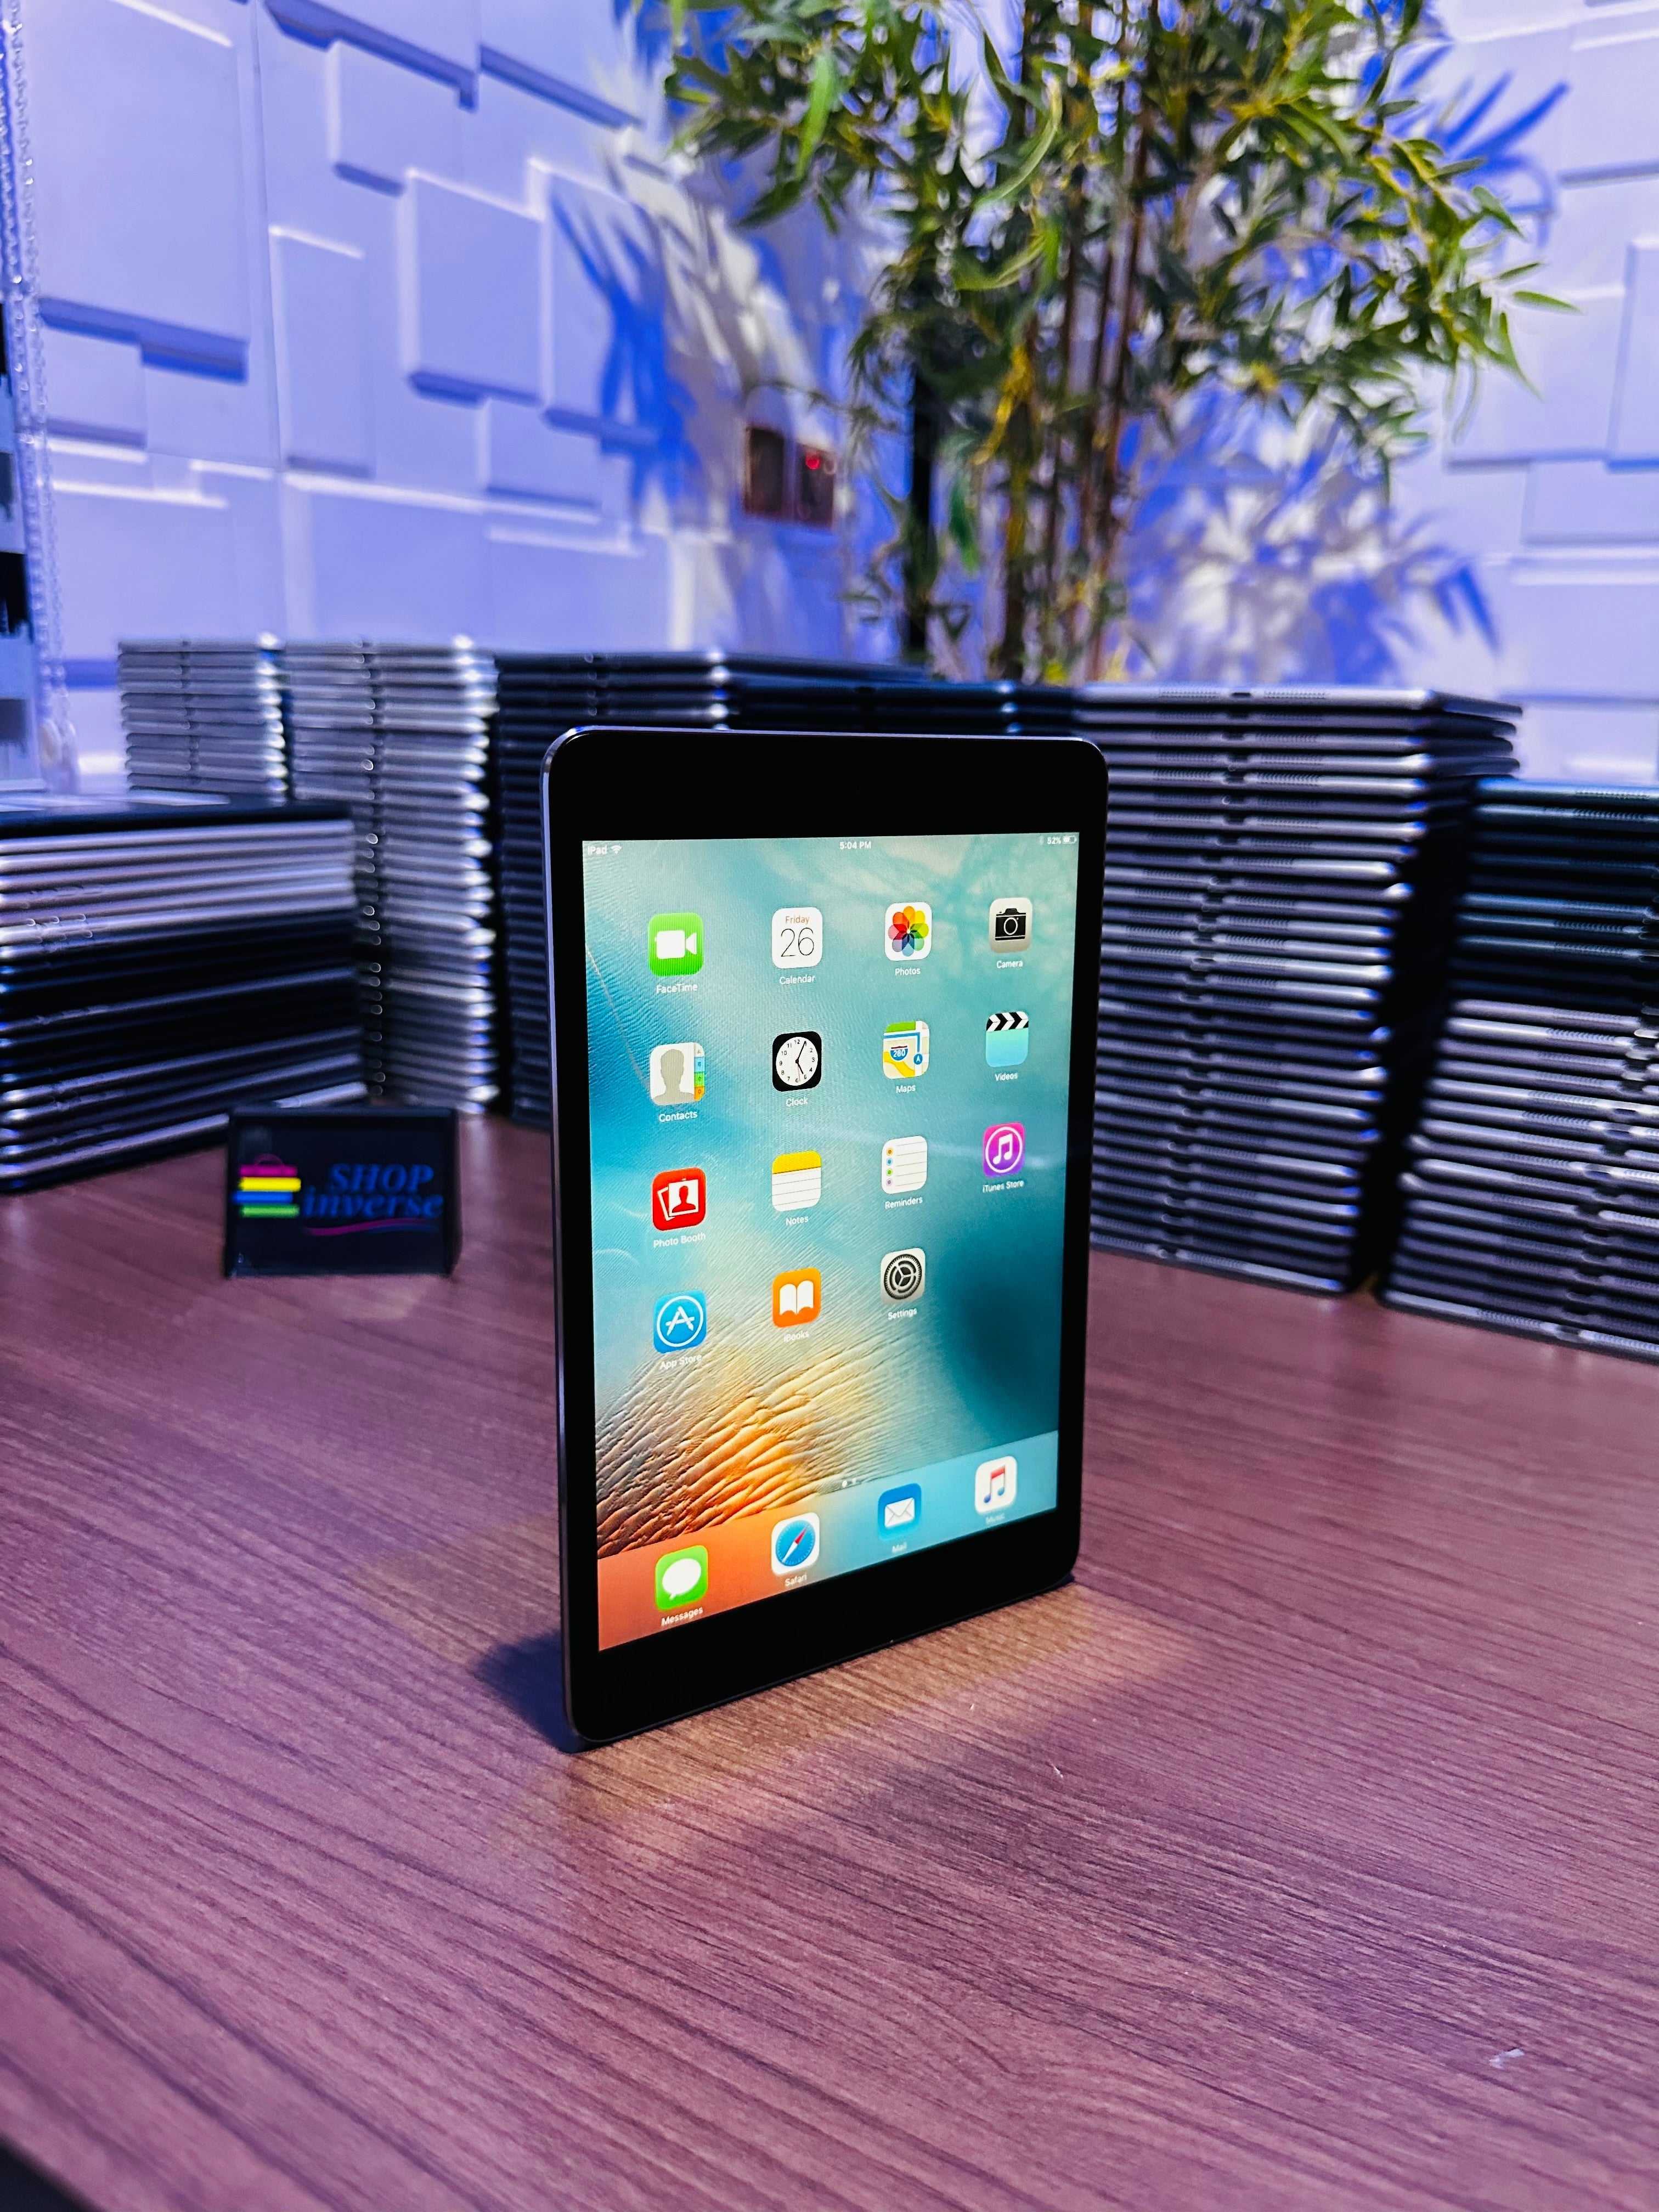 Apple iPad Mini 2 - 16GB - WiFi + SIM - Space Gray – SHOPINVERSE